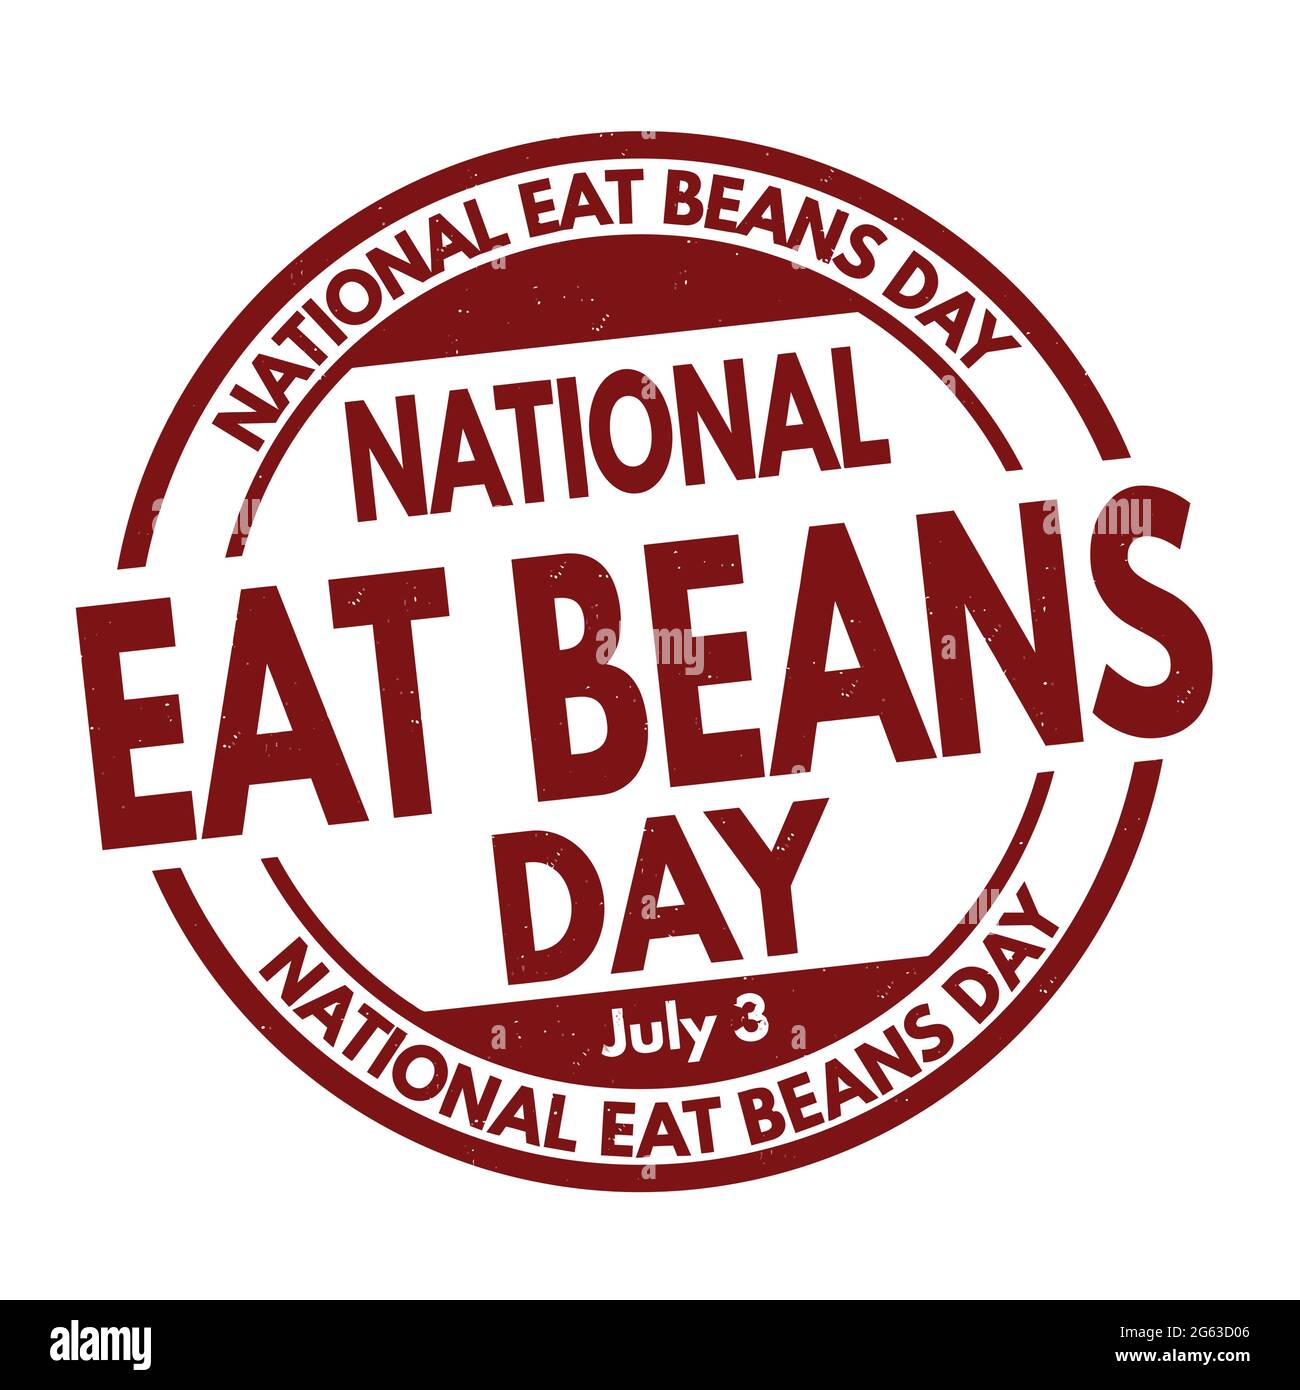 National Eat Beans Day Grunge Gummistempel auf weißem Hintergrund, Vektorgrafik Stock Vektor